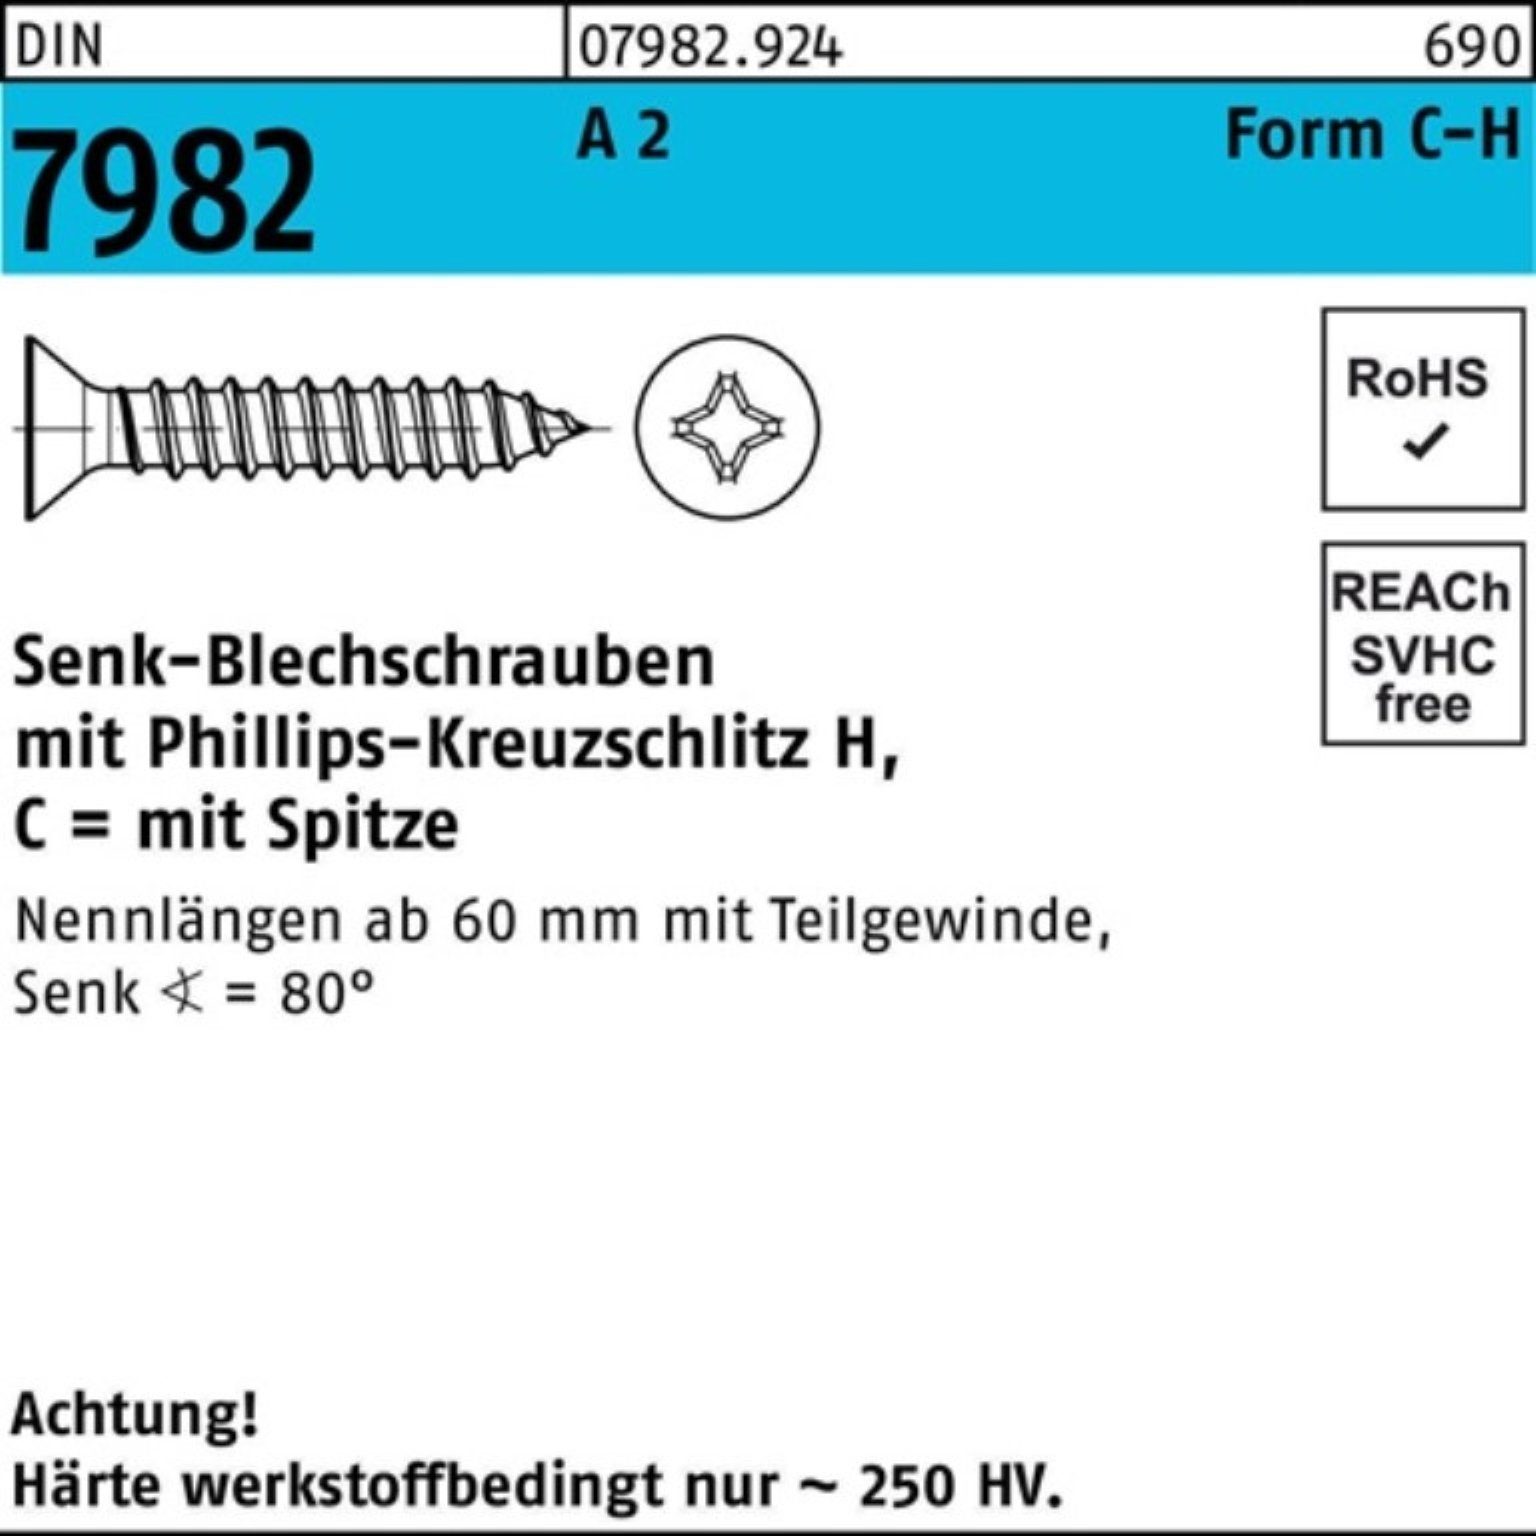 Reyher Schraube 100er Pack St 50-H PH/Spitze A 4,8x 7982 DIN C 100 2 Senkblechschraube